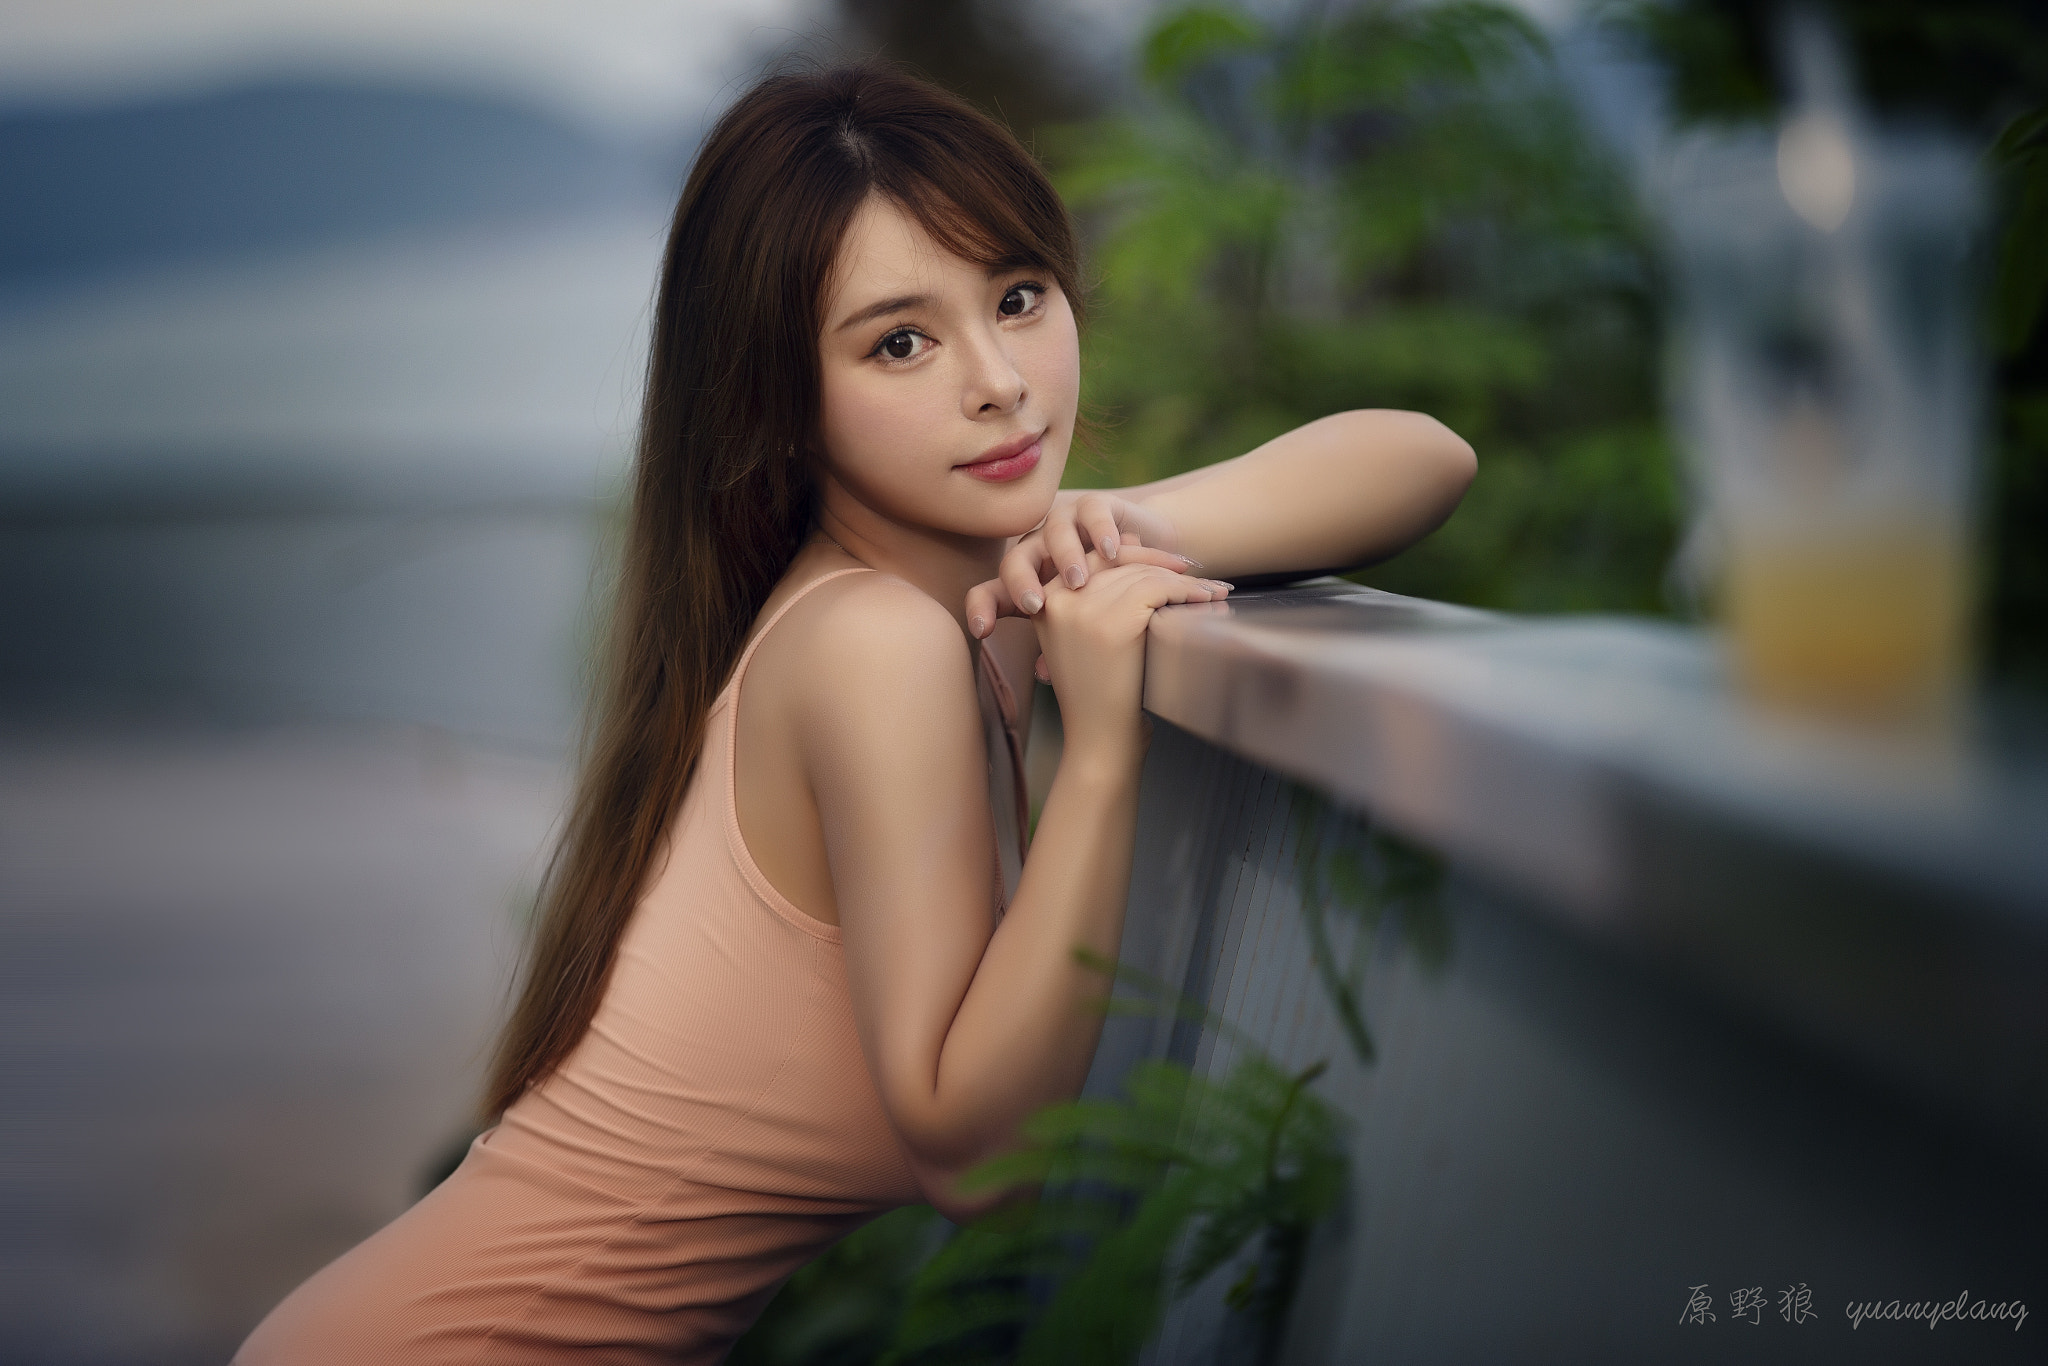 Yuan Yelang Women Asian Brunette Dark Eyes Smiling Pink Clothing Depth Of Field 2048x1366